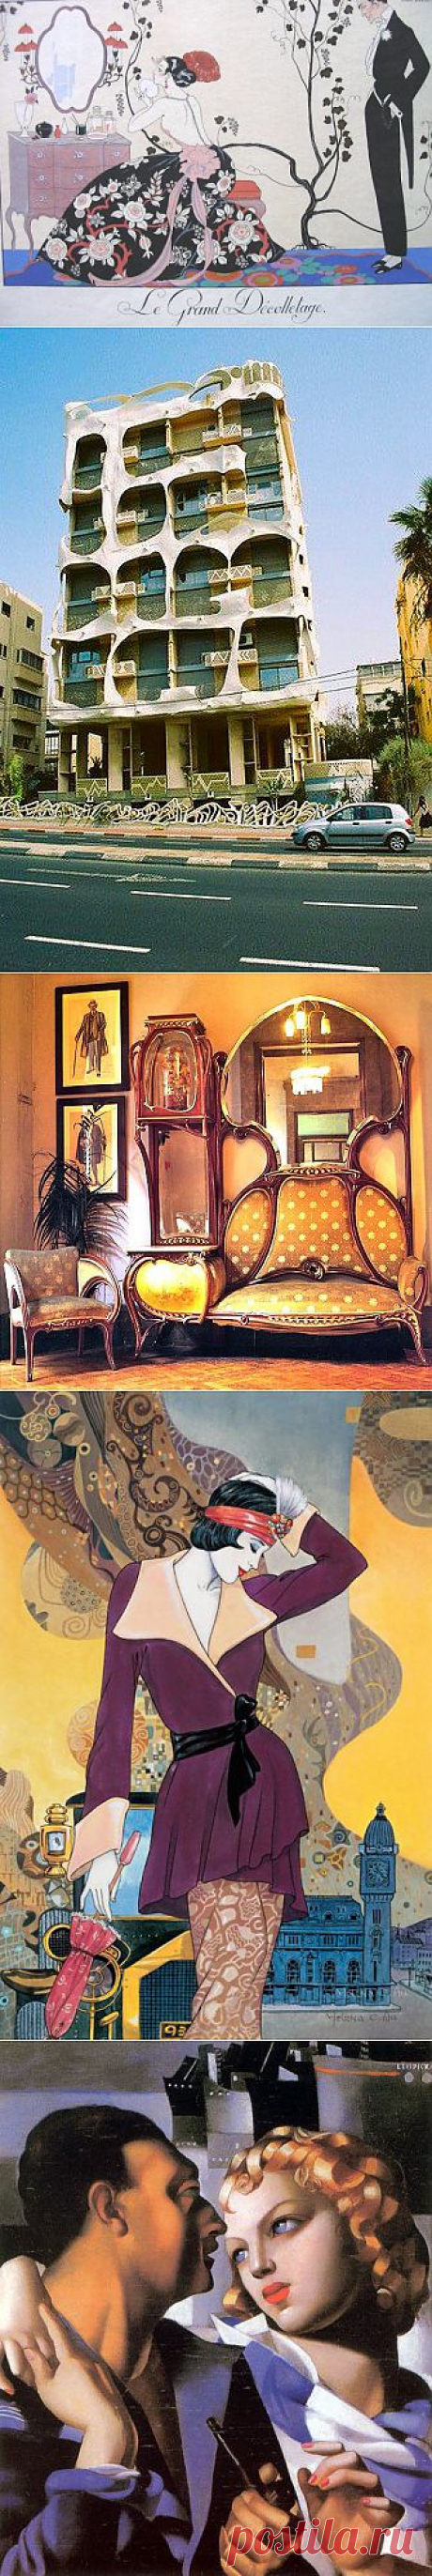 Арт Деко стиль ермин Арт Деко произошёл от французского art deco. Получило своё название от Международной Выставки декоративного искусства и промышленности, которая проходила в Париже  1925 году...